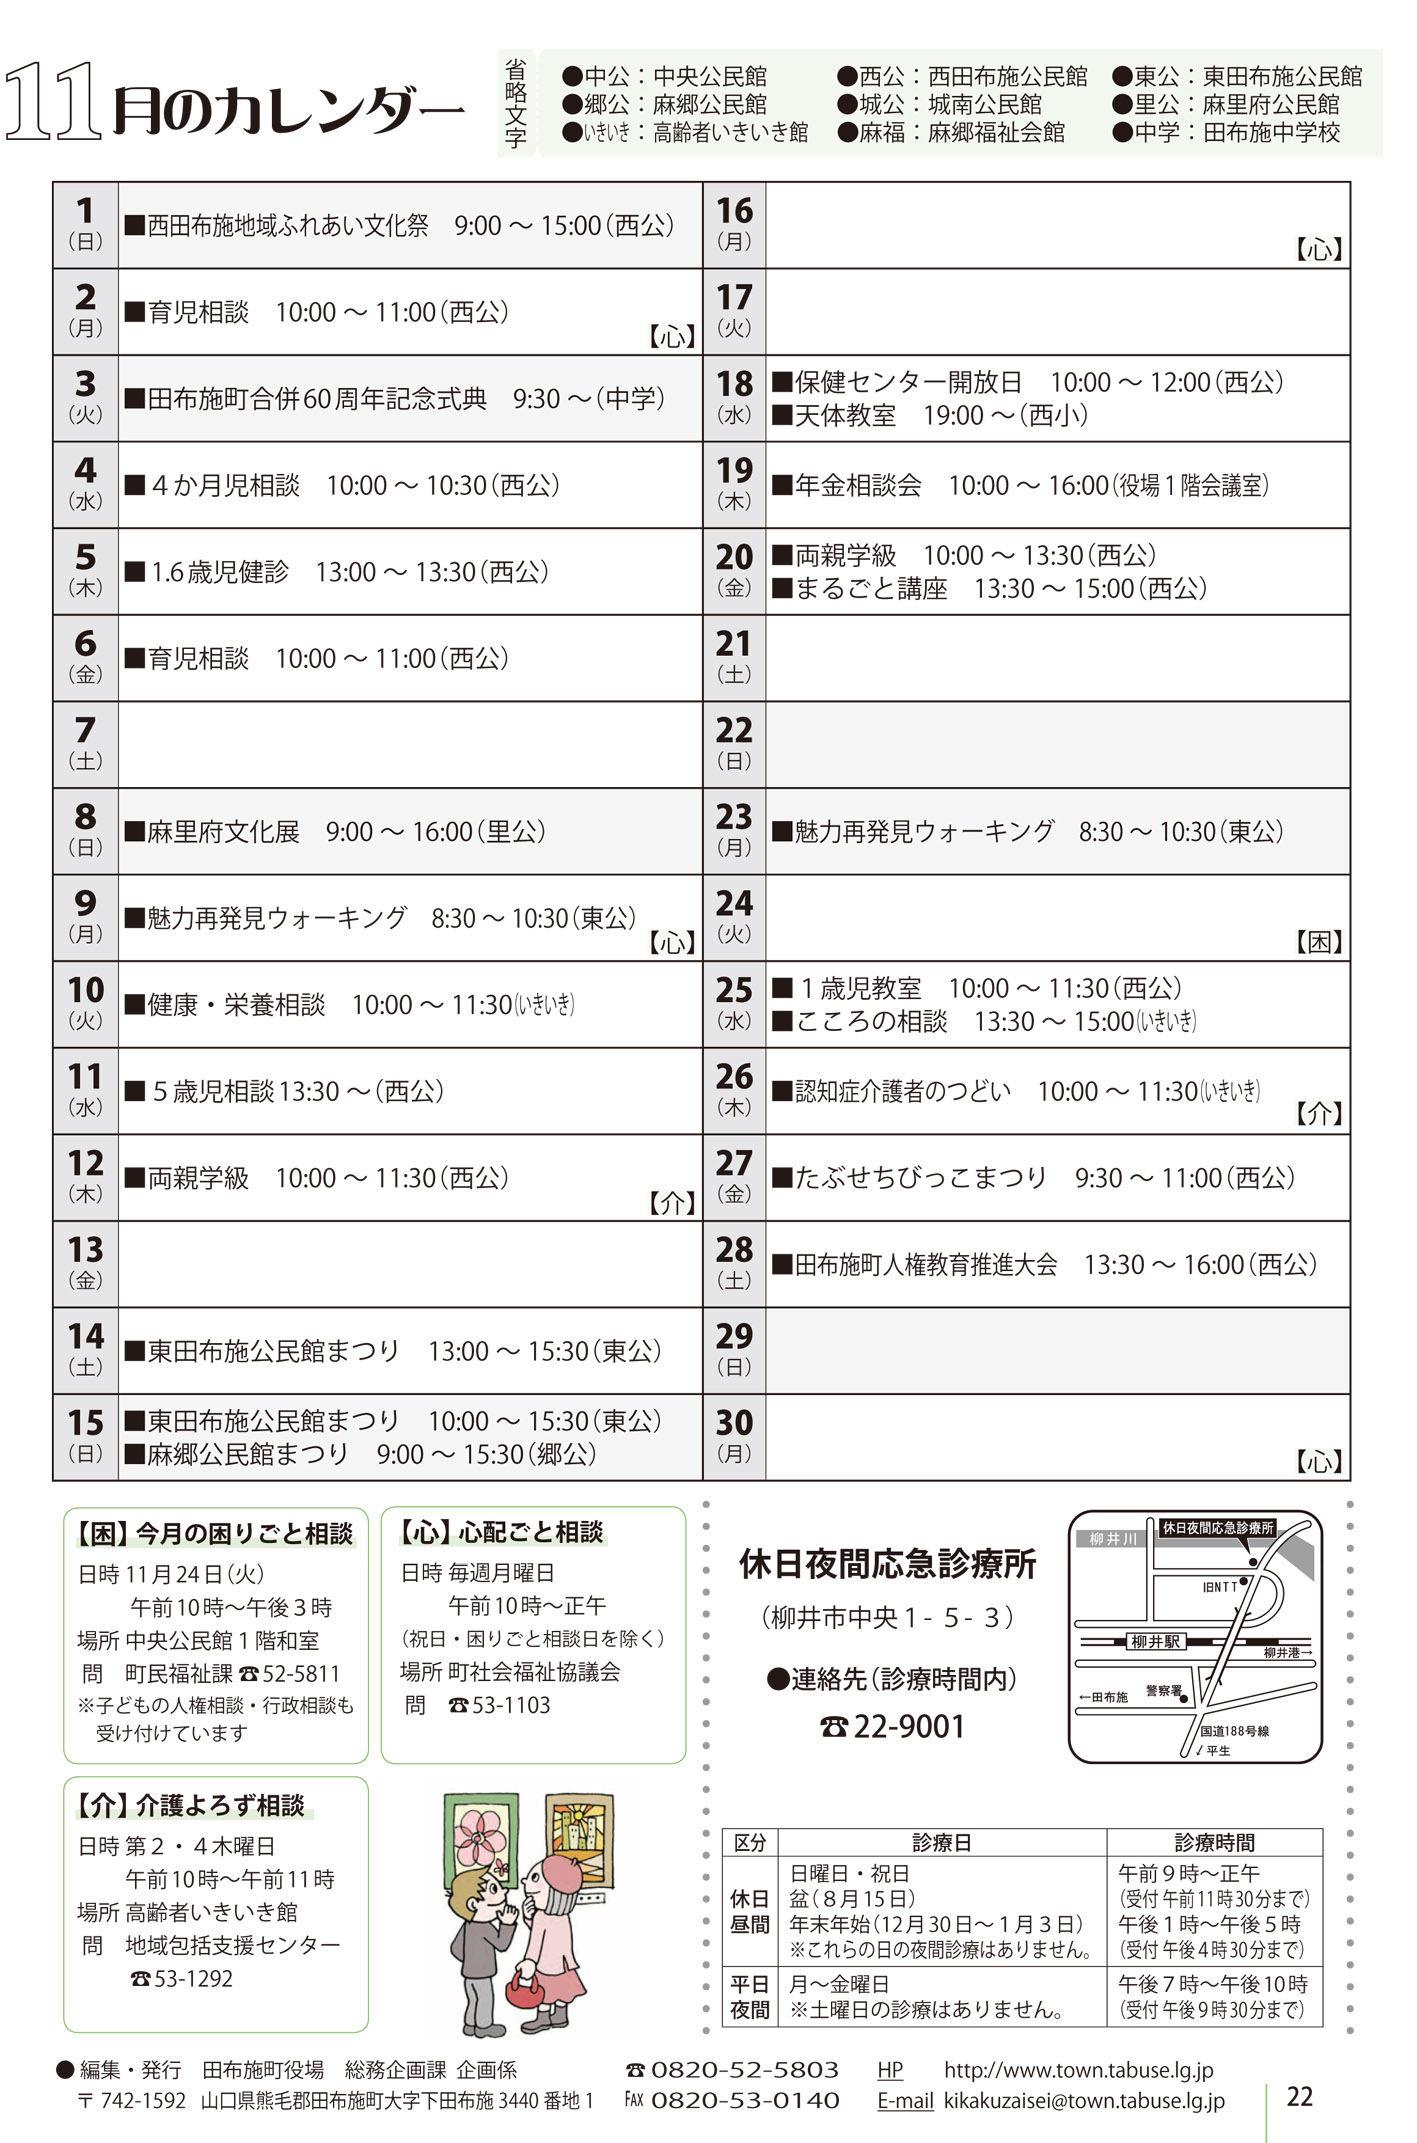 行事カレンダー 15年11月 田布施町